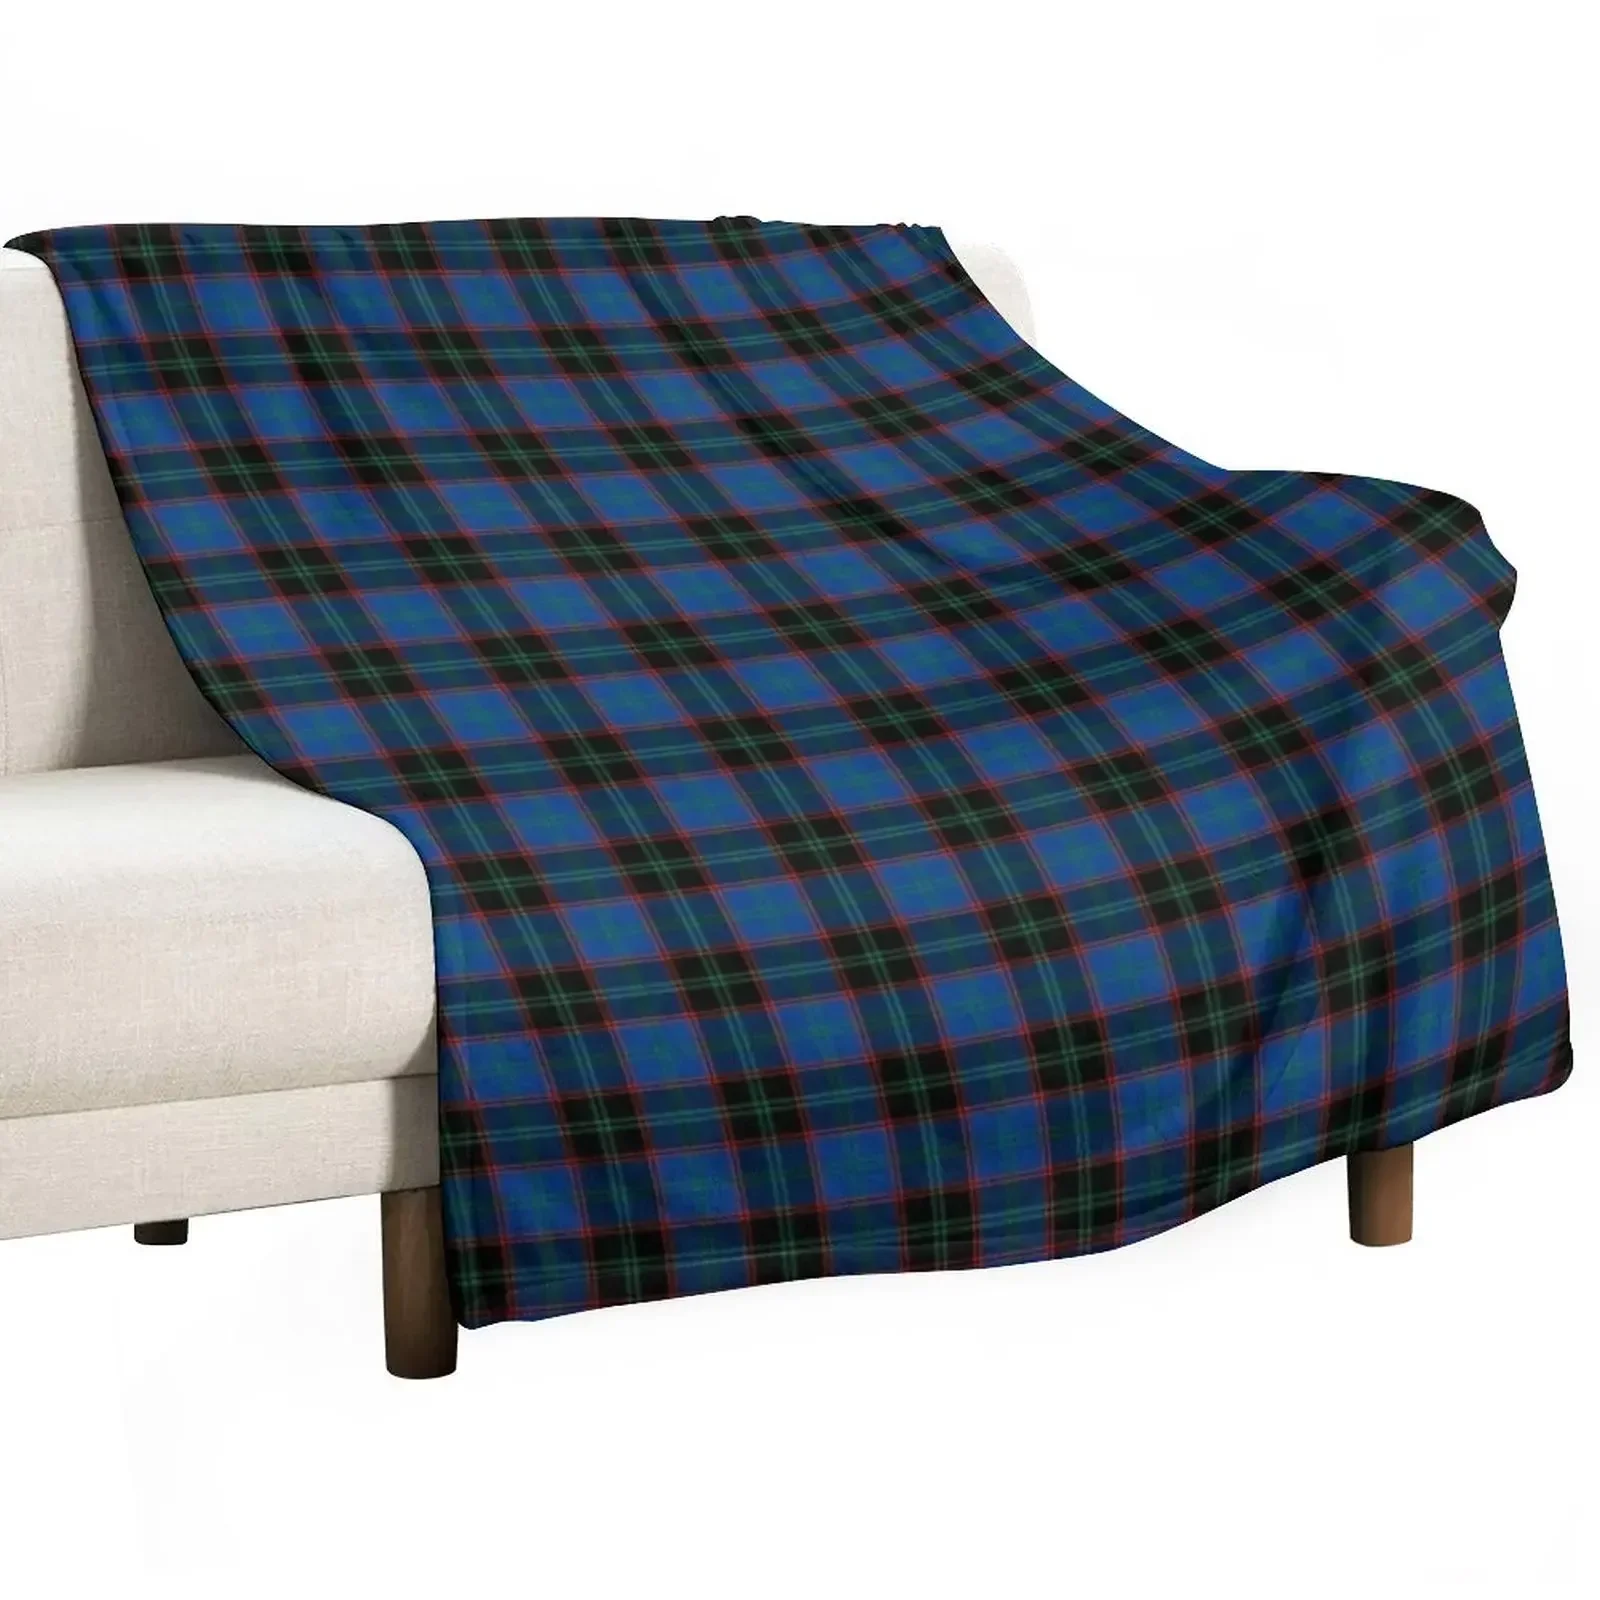 

Плед Клетчатое одеяло Clan Hume, спальный мешок, пушистые декоративные диваны, милые пледовые одеяла